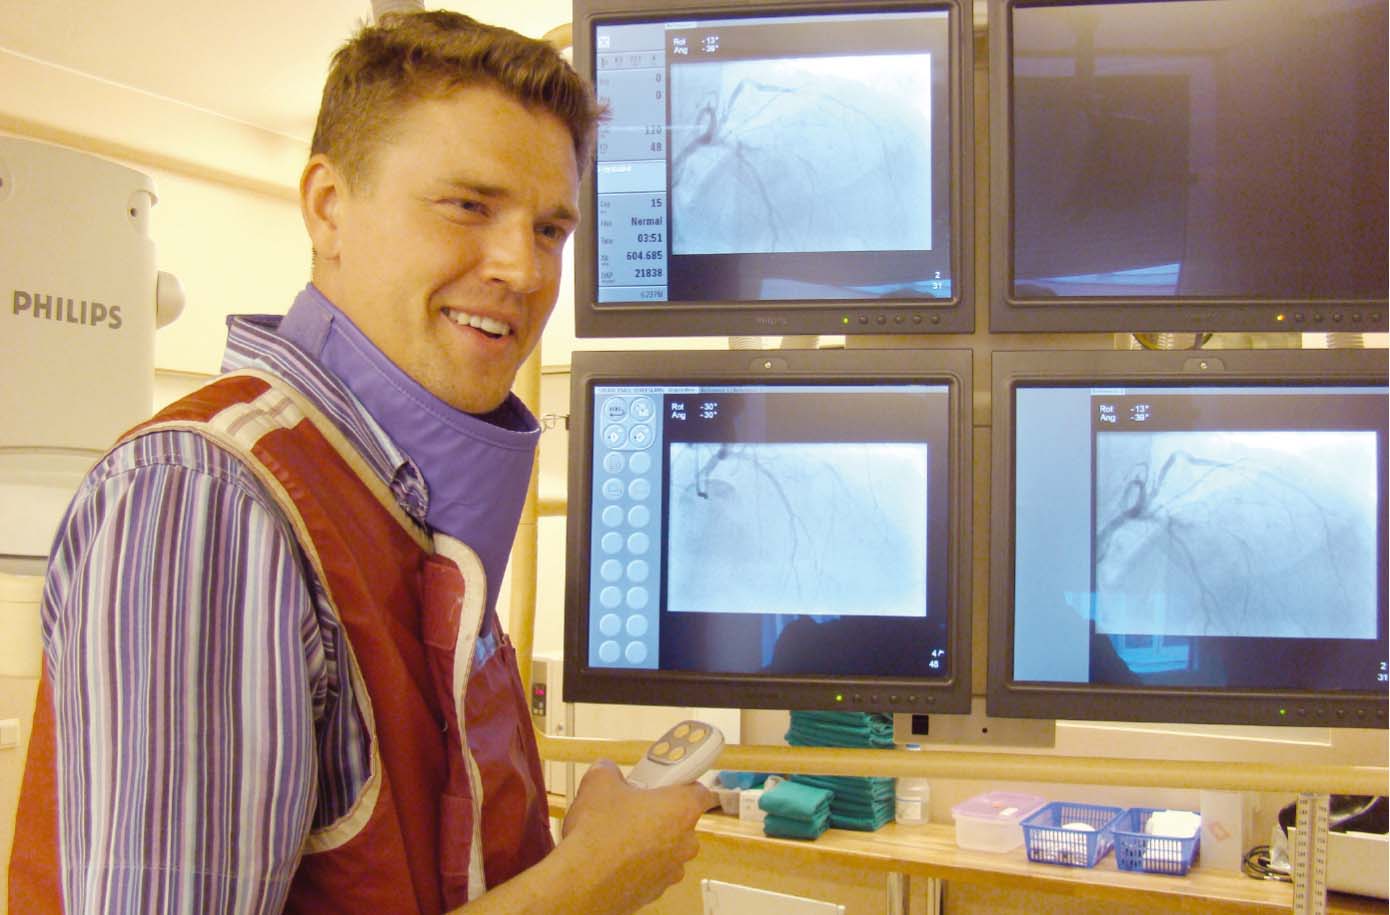 Dr. Gāliņš Liepājas Sirds kateterizācijas laboratorijā. “Izmantoto materiālu un tehnoloģiju ziņā Liepājā viss ir tāpat kā Eindhovenā. Tāds pats Philips aparāts ir pat Liepājā”